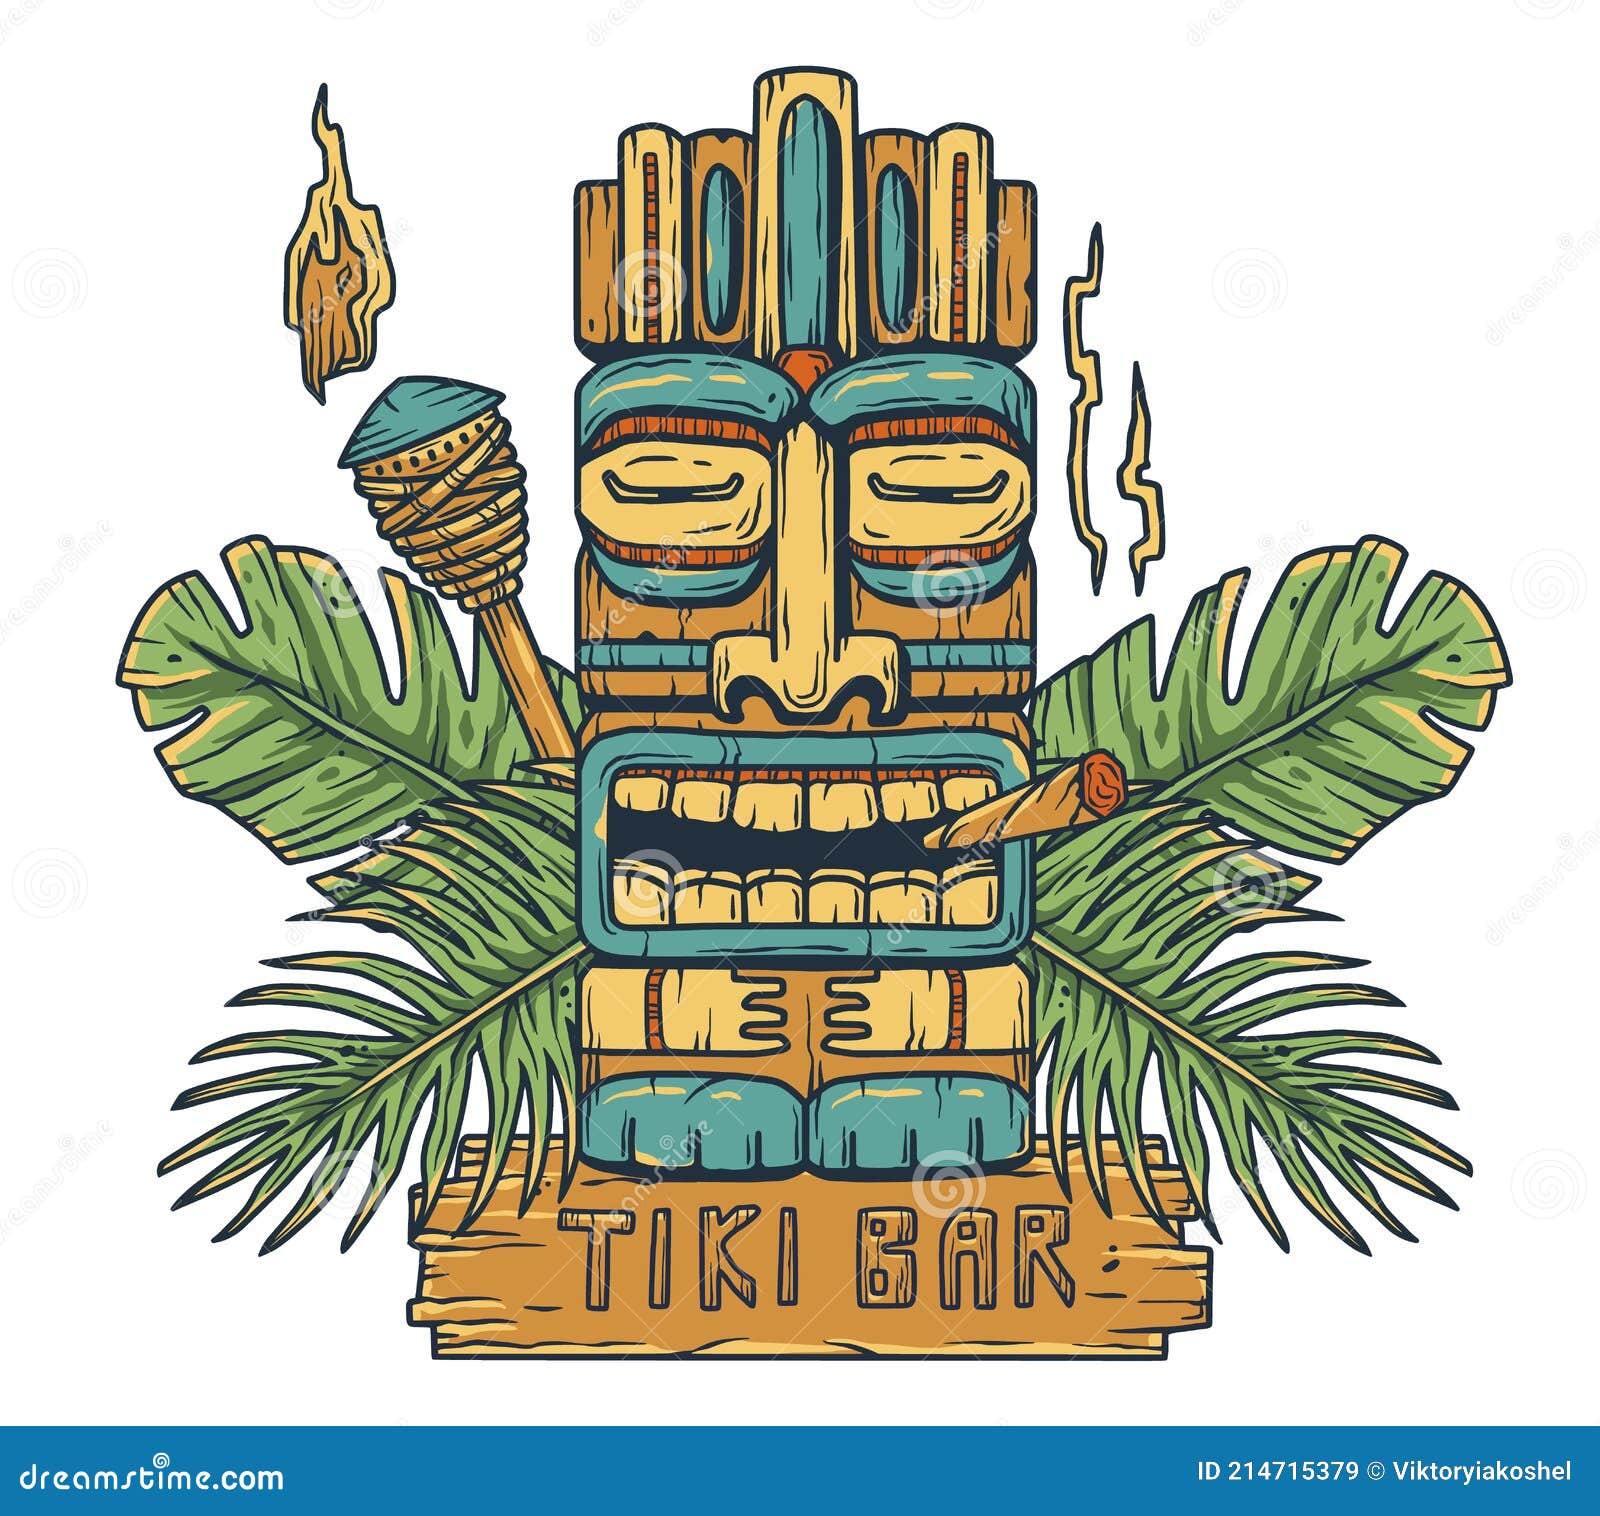 emblem of hawaii tiki mask or surfing, totem bar